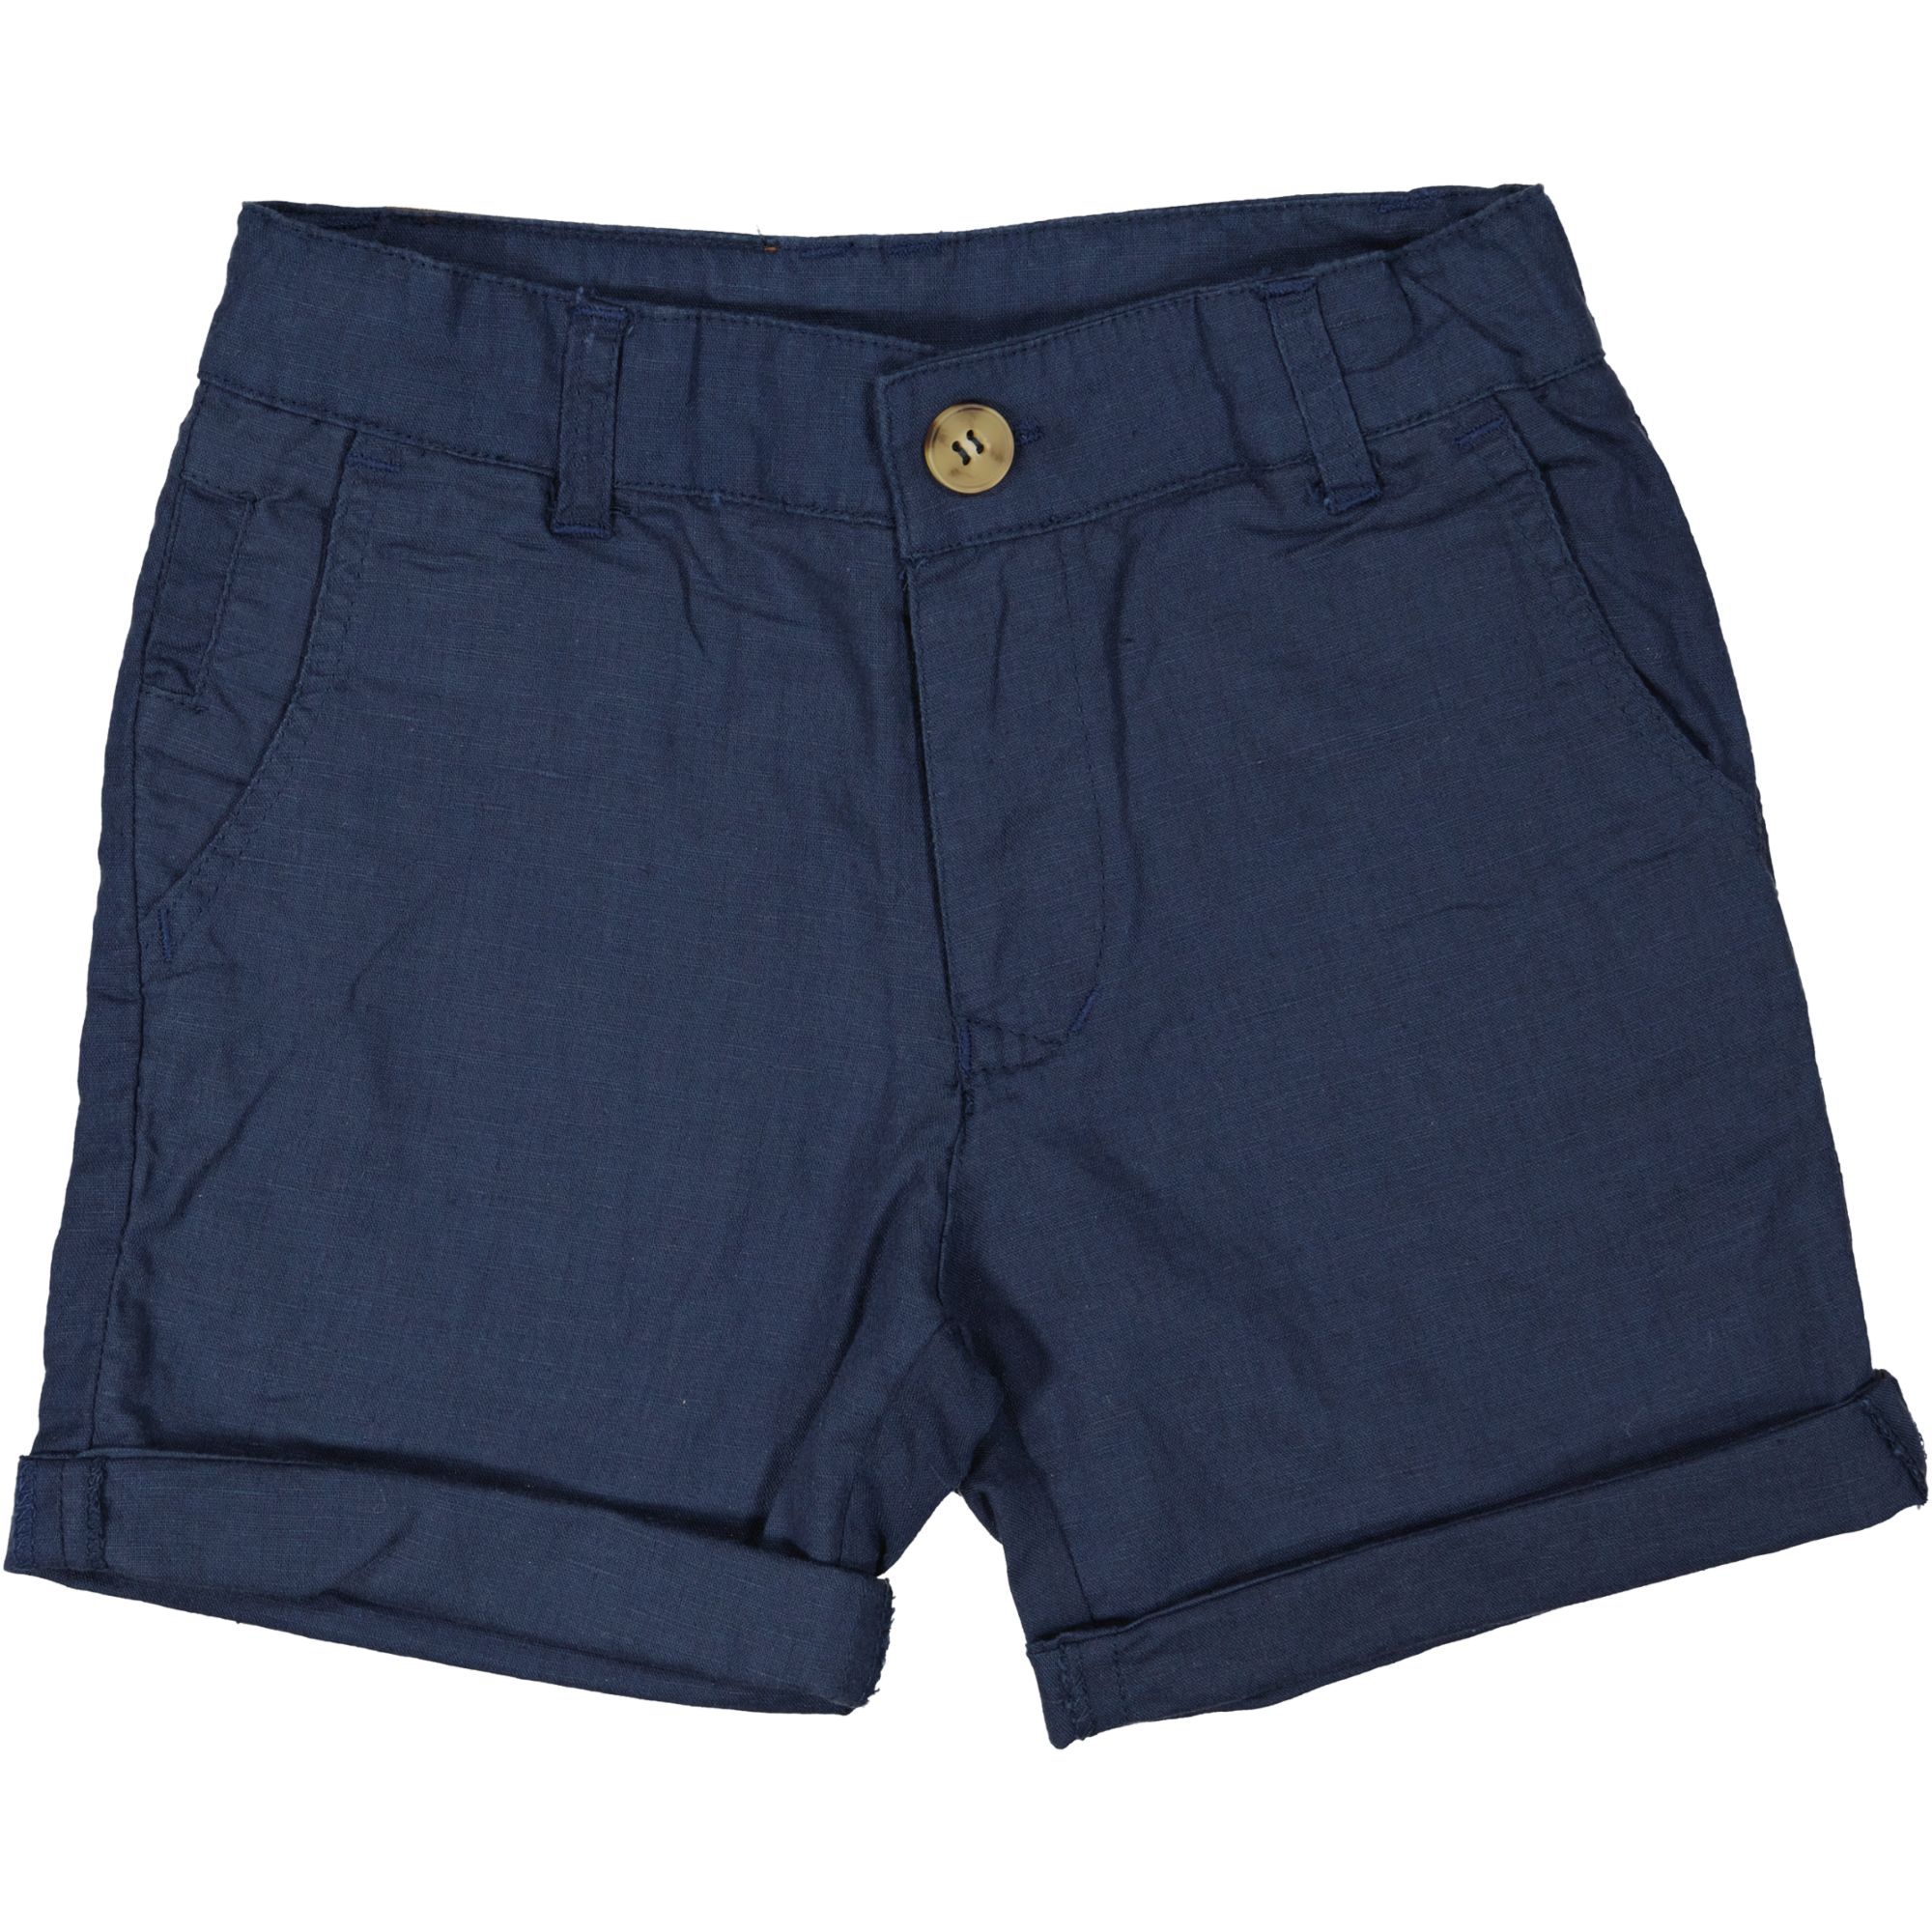 Linnen shorts Navy